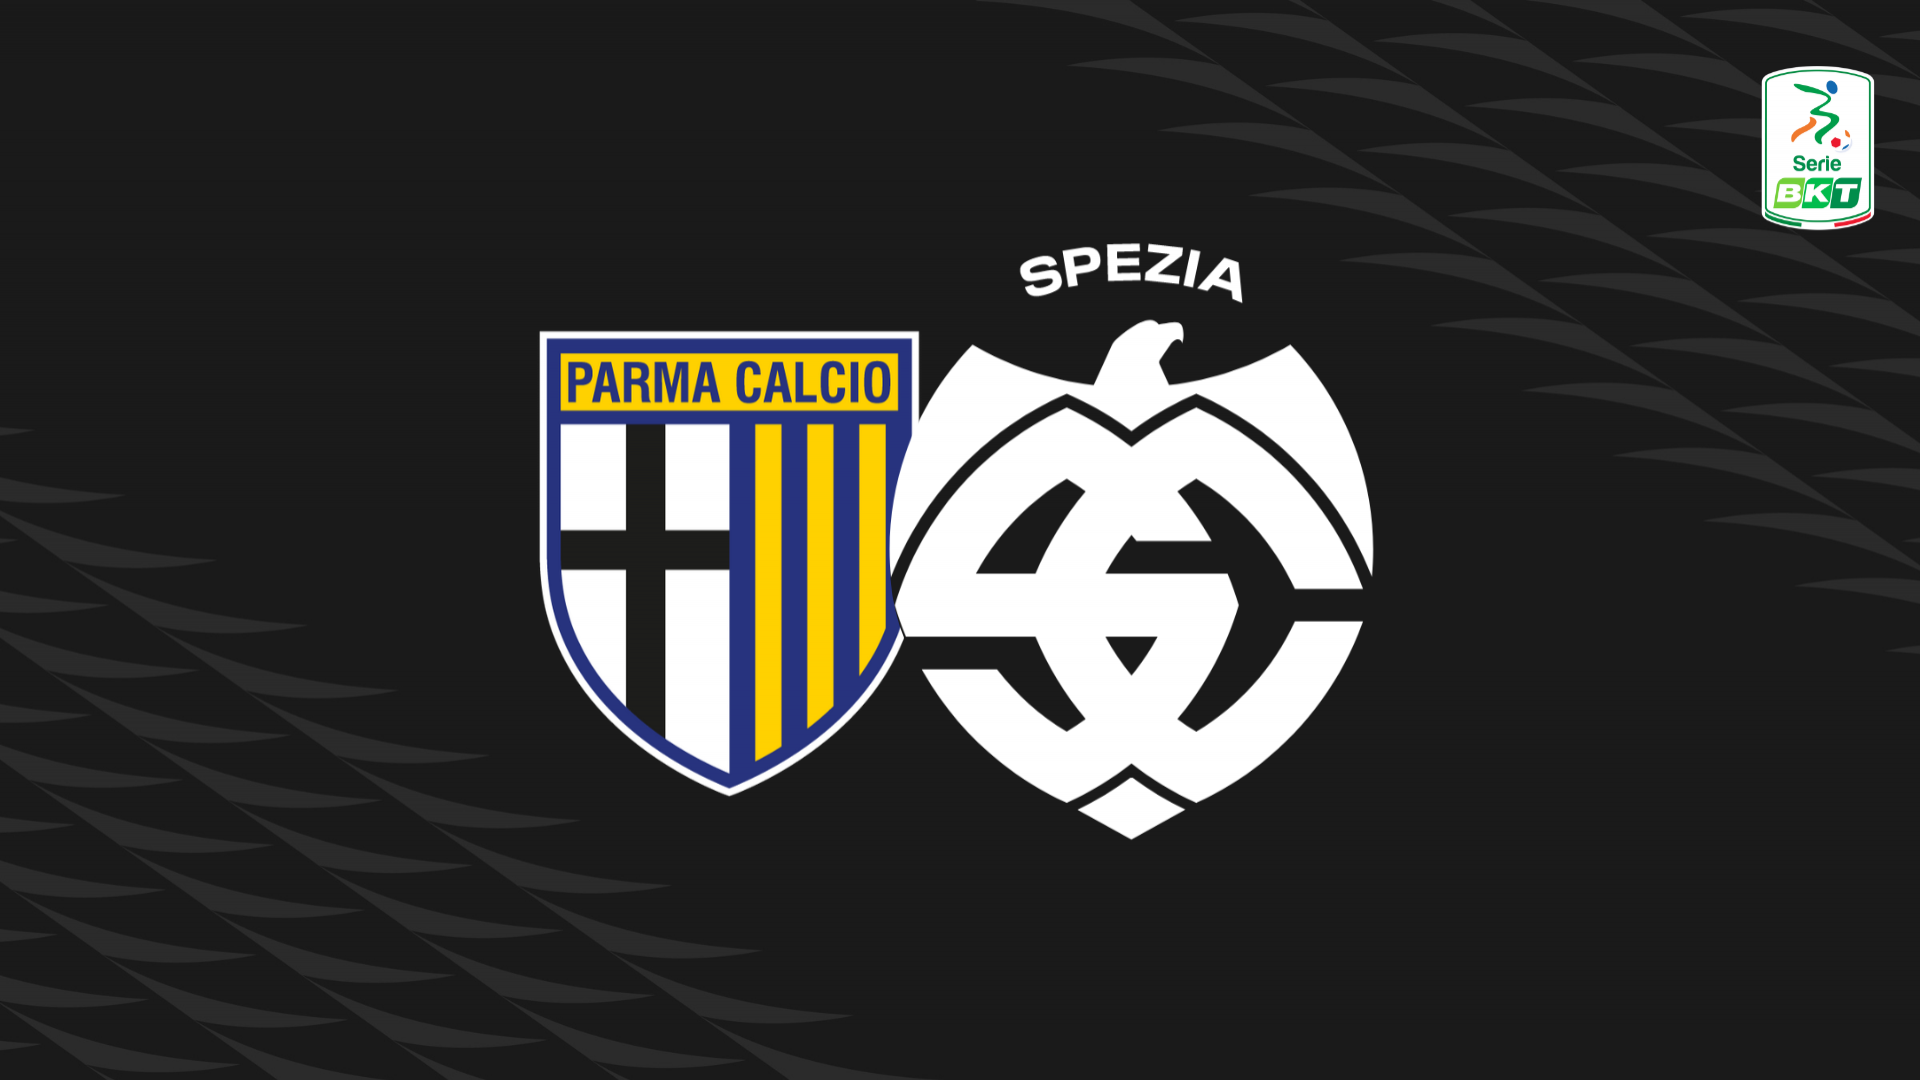 Serie BKT: Parma-Spezia 2-0